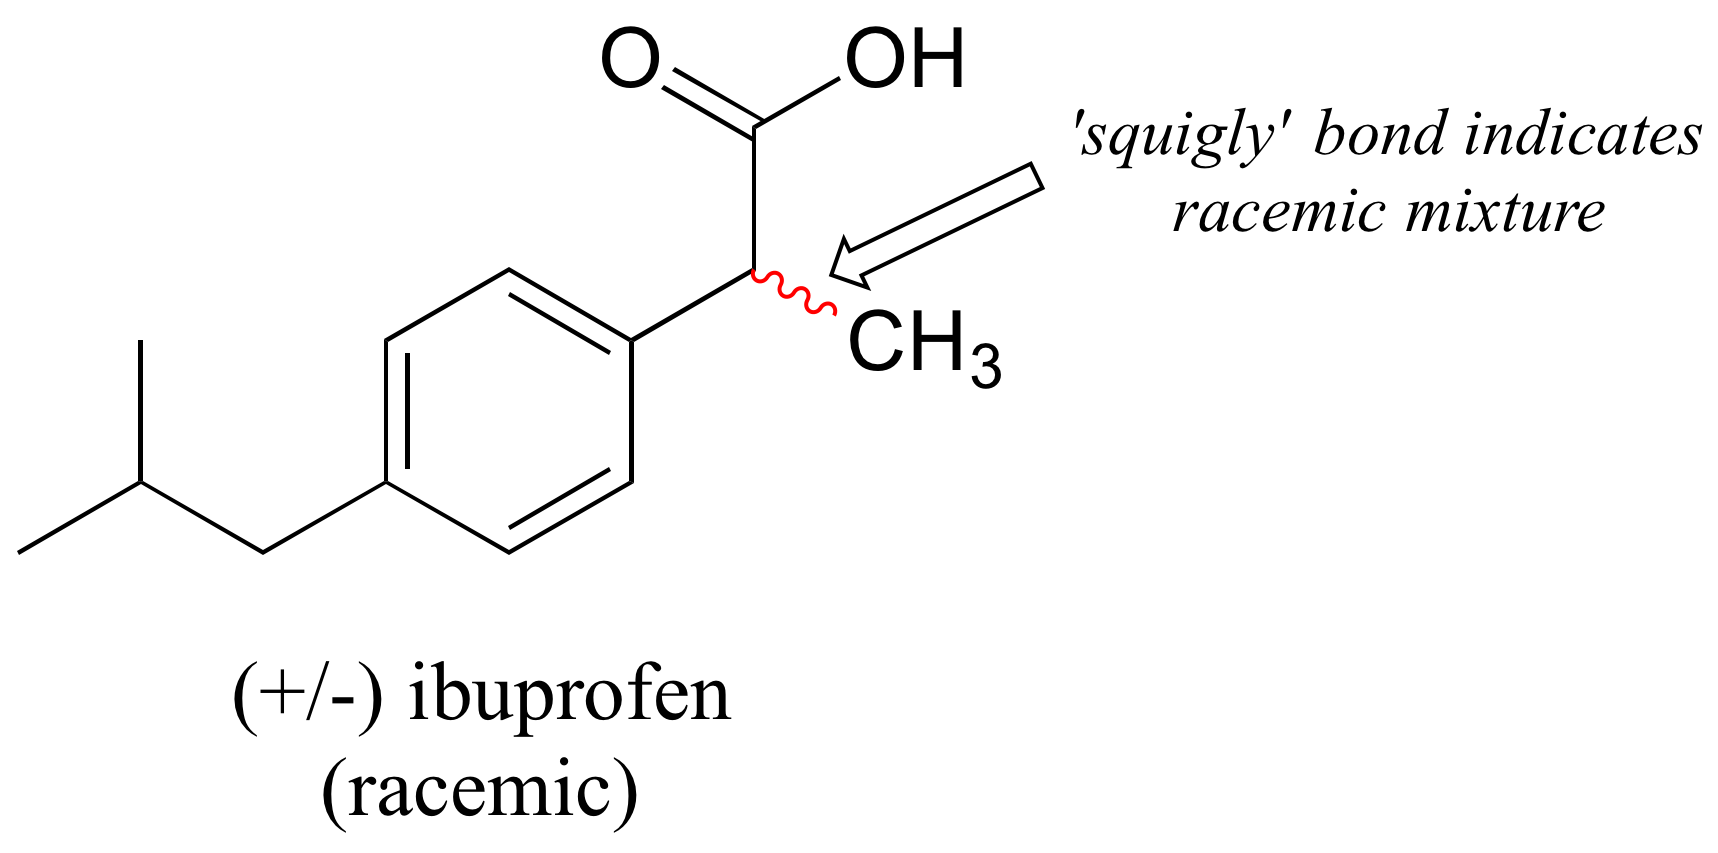 Molécula racémica de ibuprofeno. El grupo metilo unido al carbono entre el benceno y el ácido carboxílico está unido por una línea roja ondulada. El enlace ondulante indica mezcla racémica.